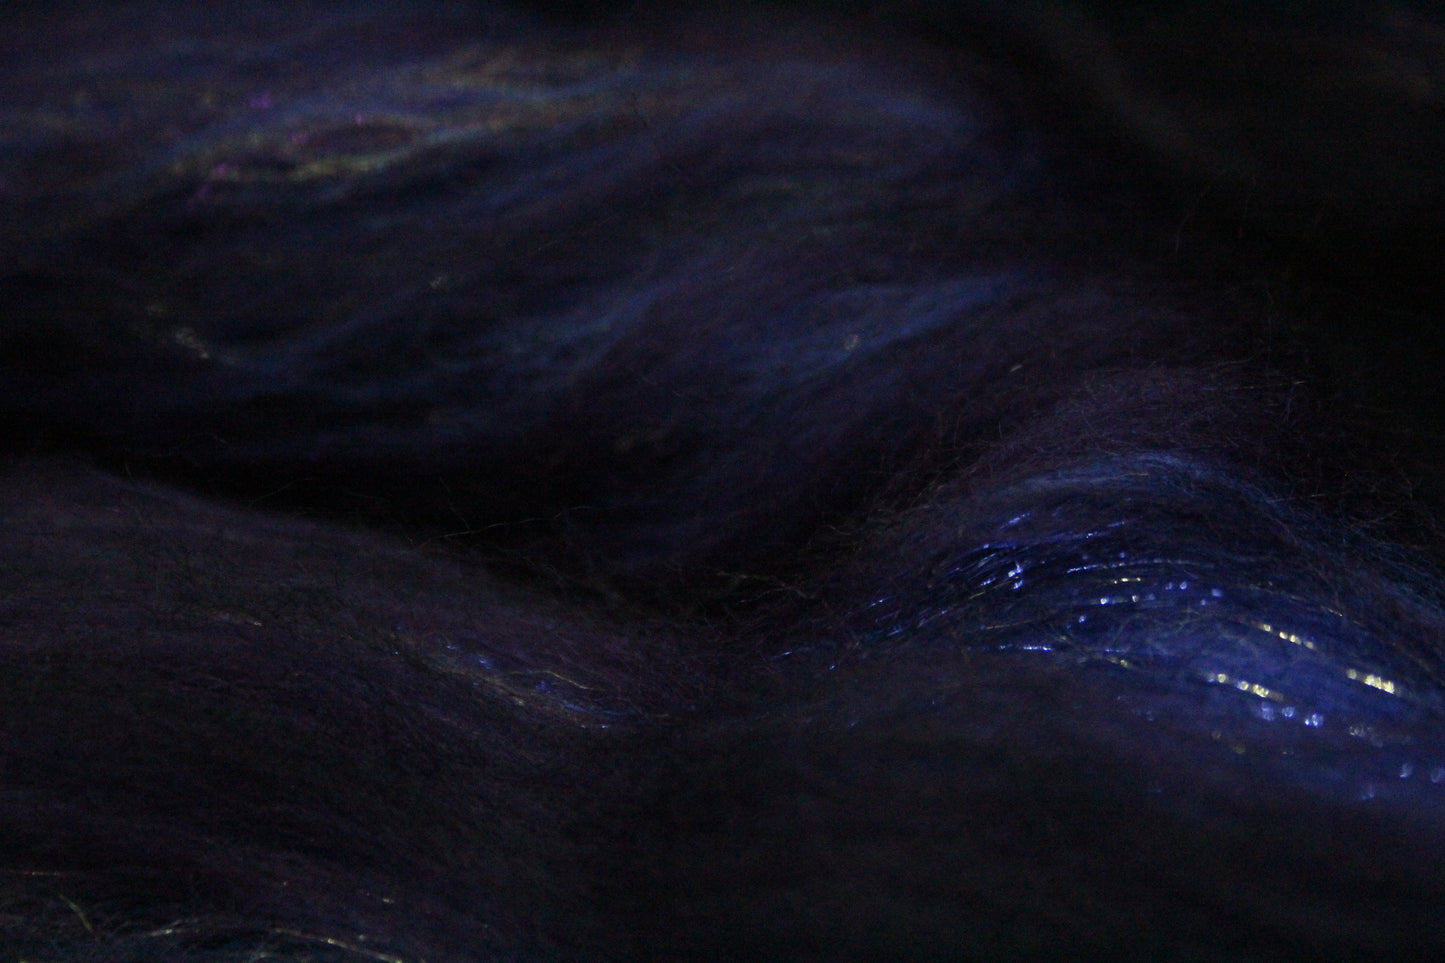 Merino Art Batt  - Purple  - 134 grams 4.7 oz - Wool for felting, spinning and weaving